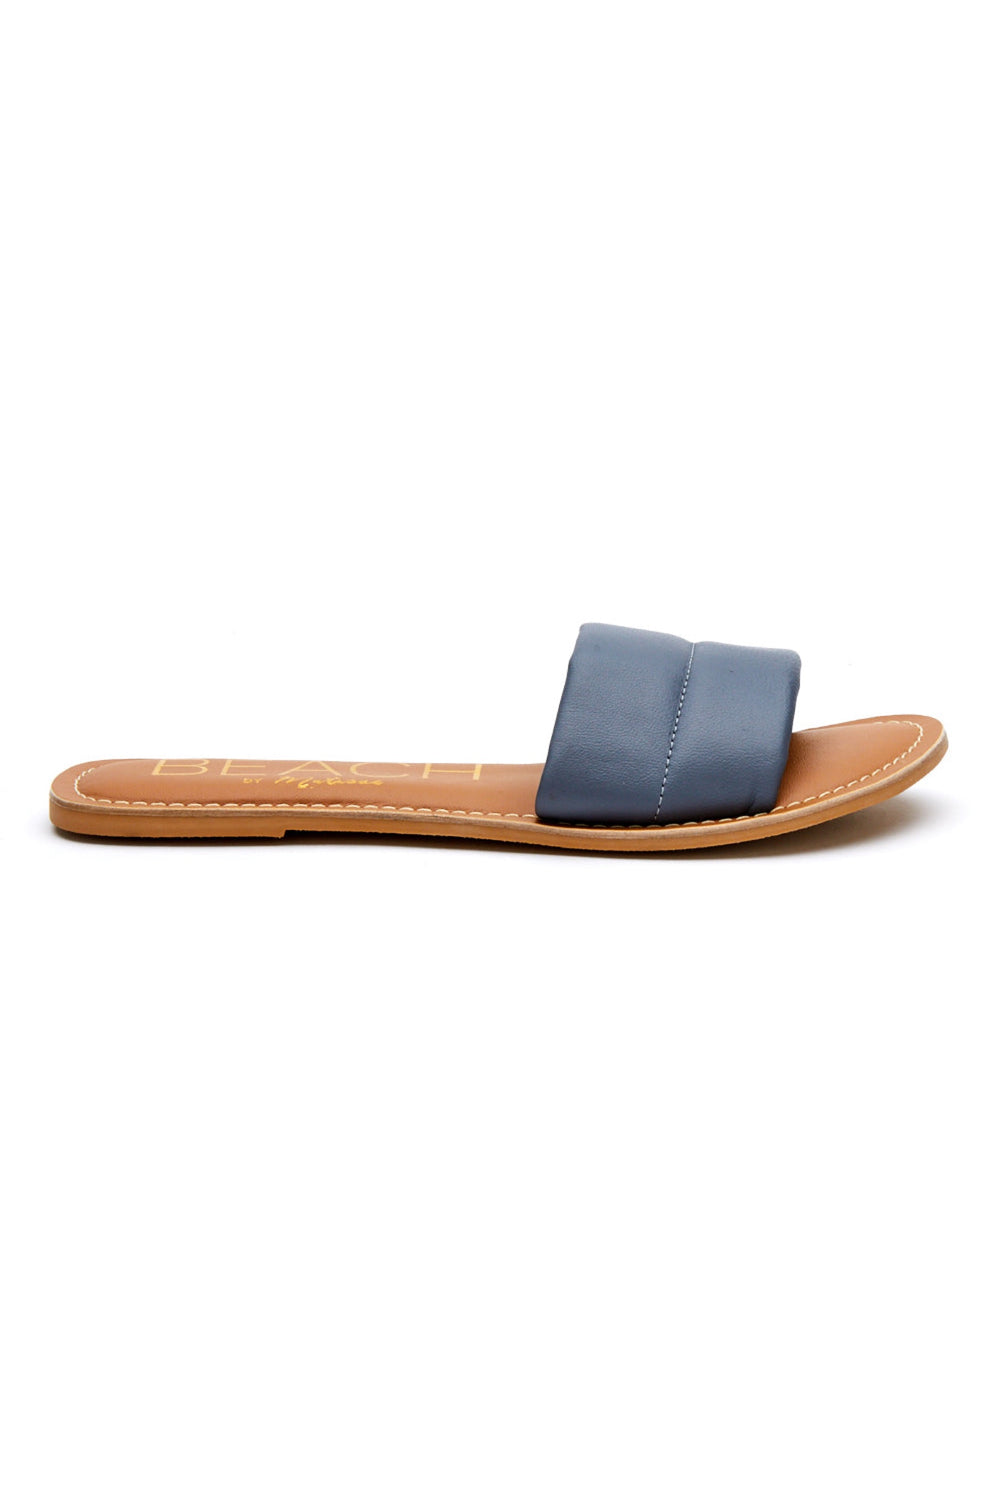 Blue Daiquiri Sandal